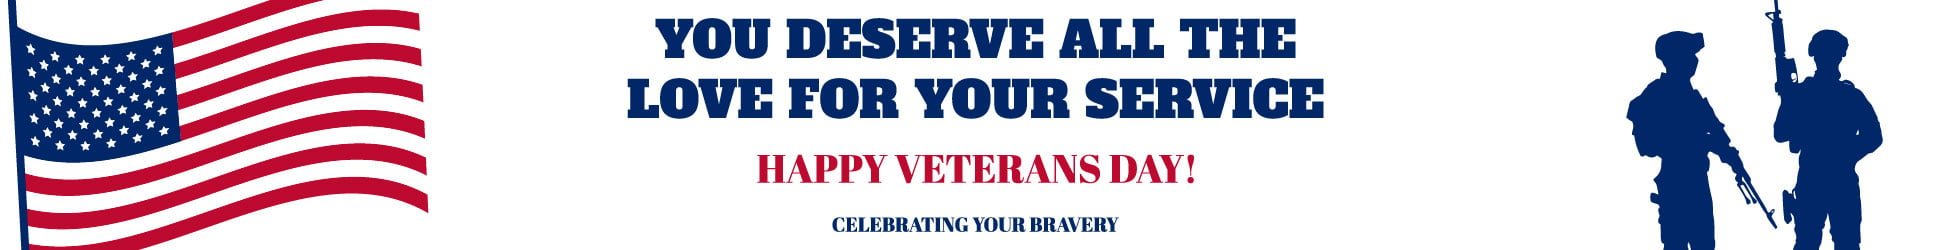 Veterans Day Website Banner in Illustrator, PSD, EPS, SVG, JPG, PNG